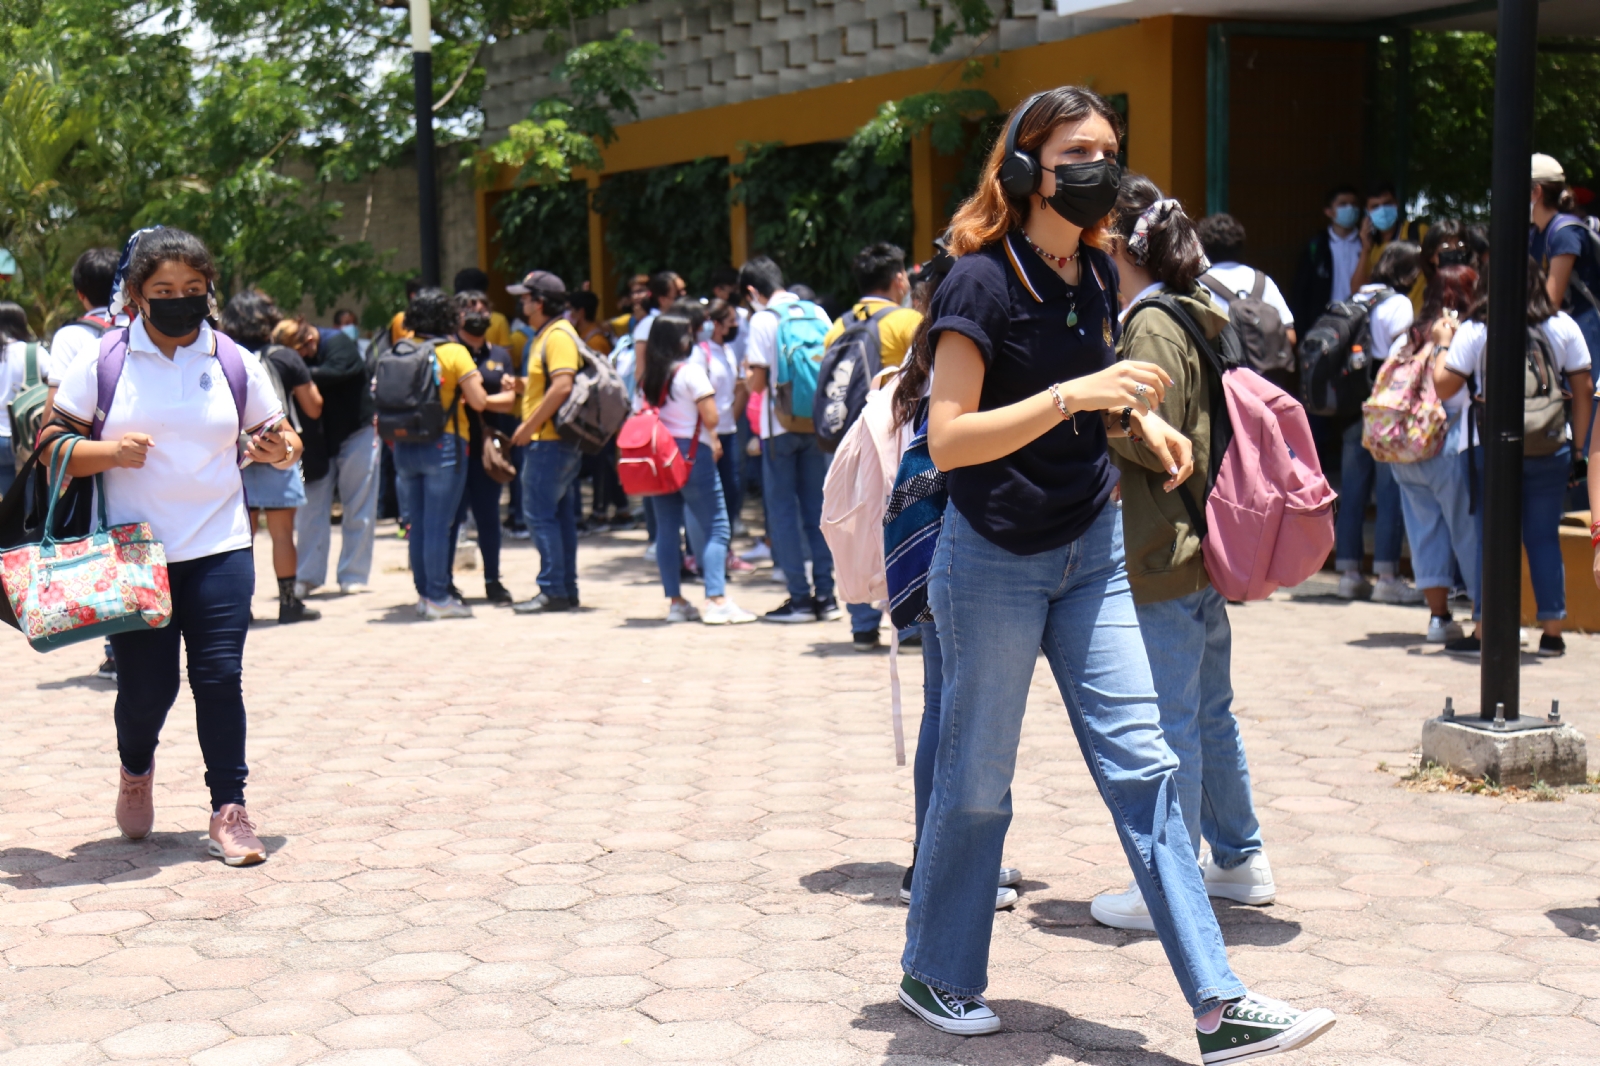 UADY Sin Acoso atendió más de 50 casos de violencia sexual en la máxima casa de estudios en dos años